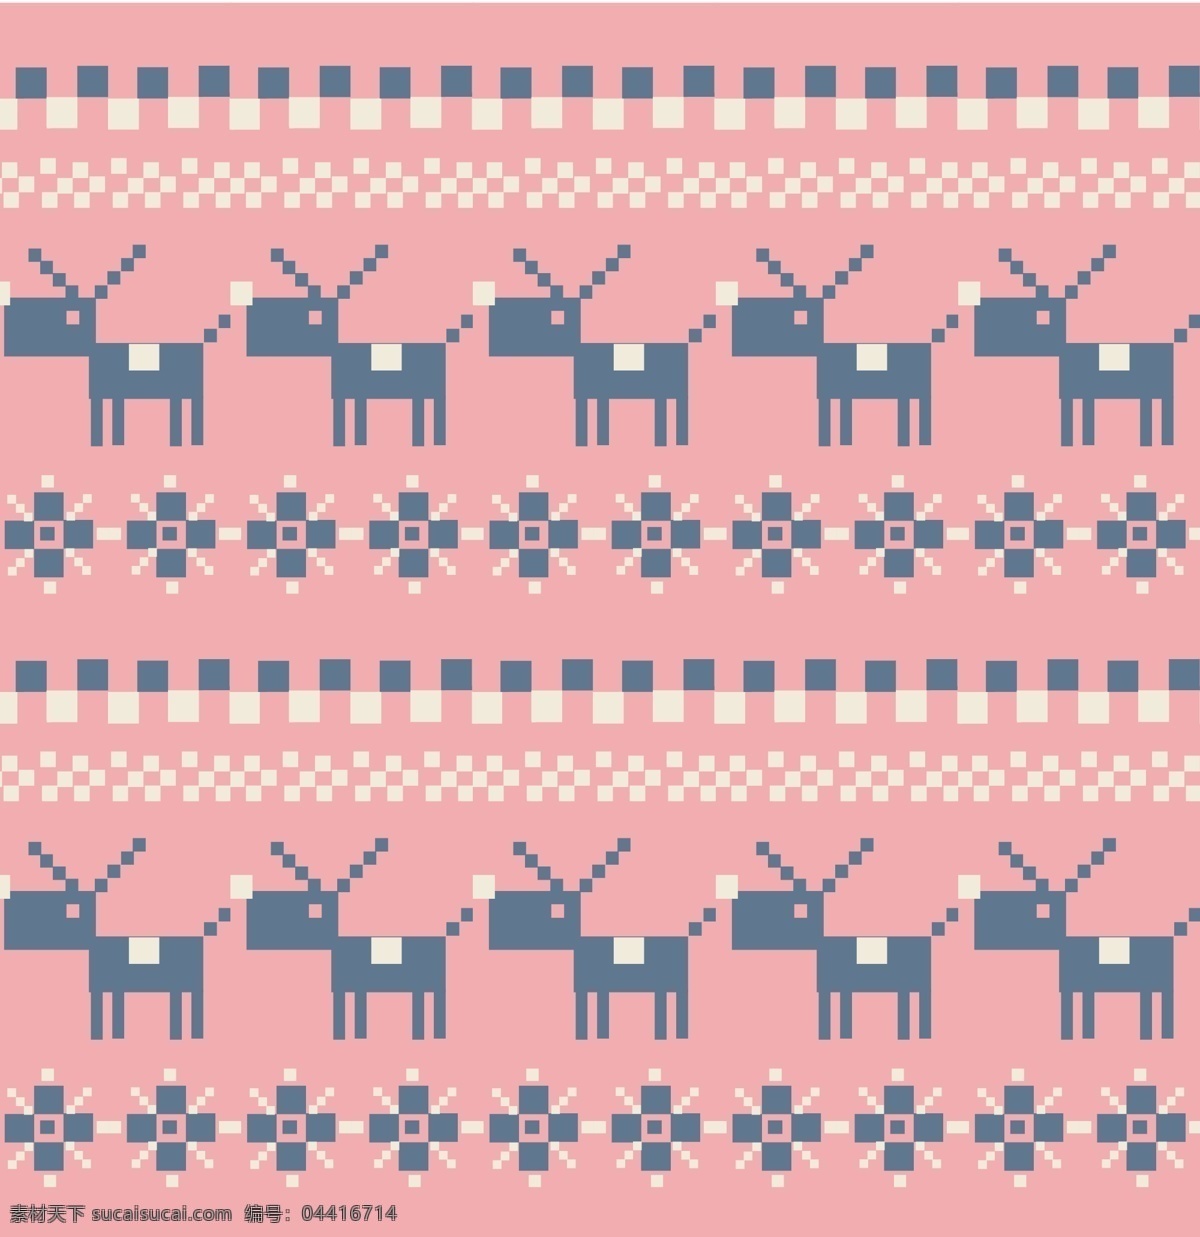 小 驴 可爱 下雪 主题 服装 图案 矢量 粉色 动物 卡通背景 填充 印刷